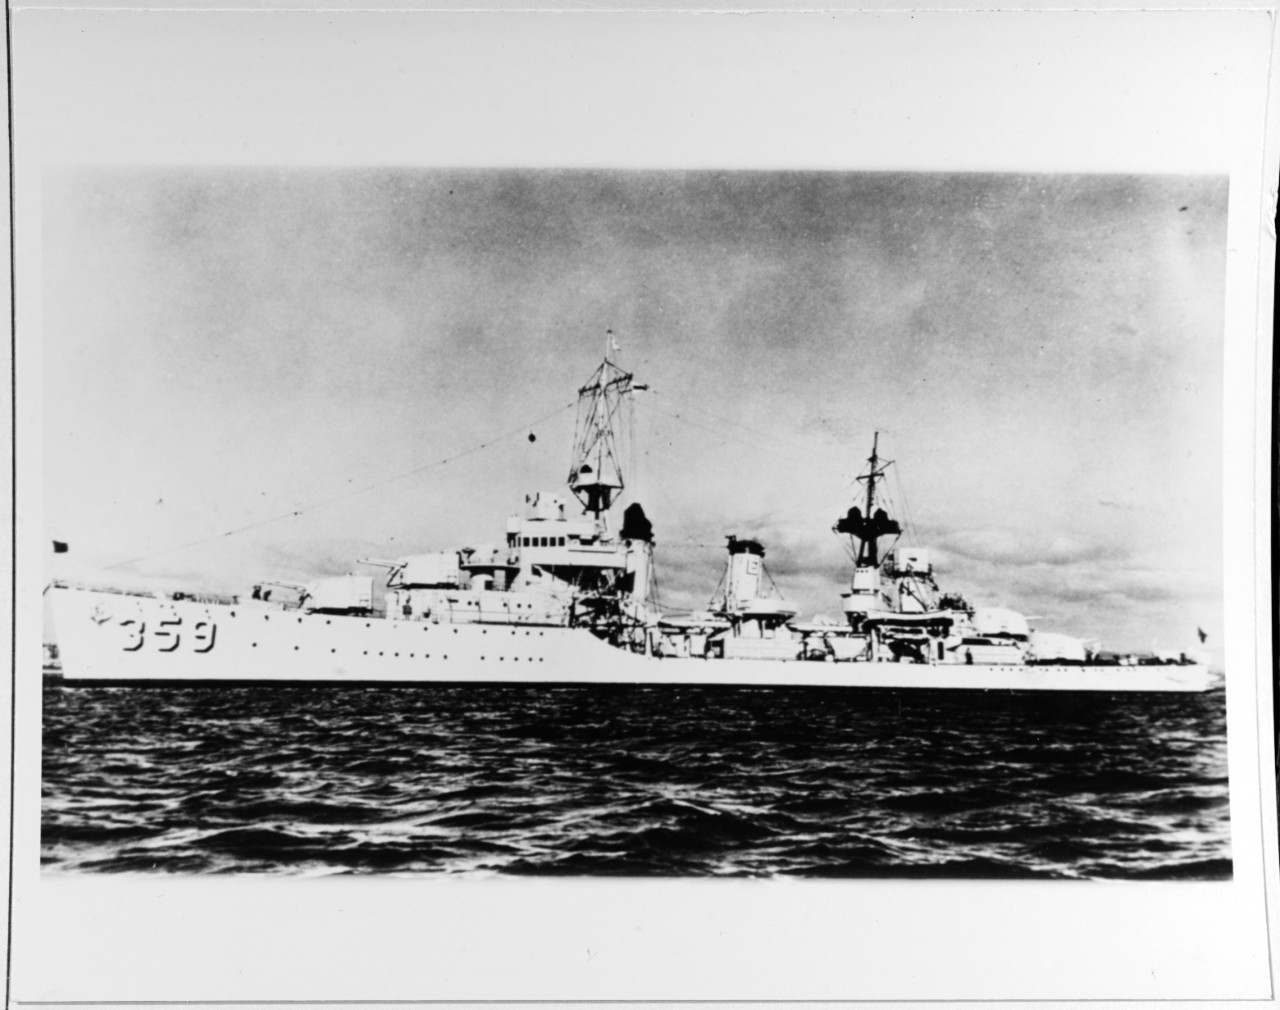 USS WINSLOW (DD-359)